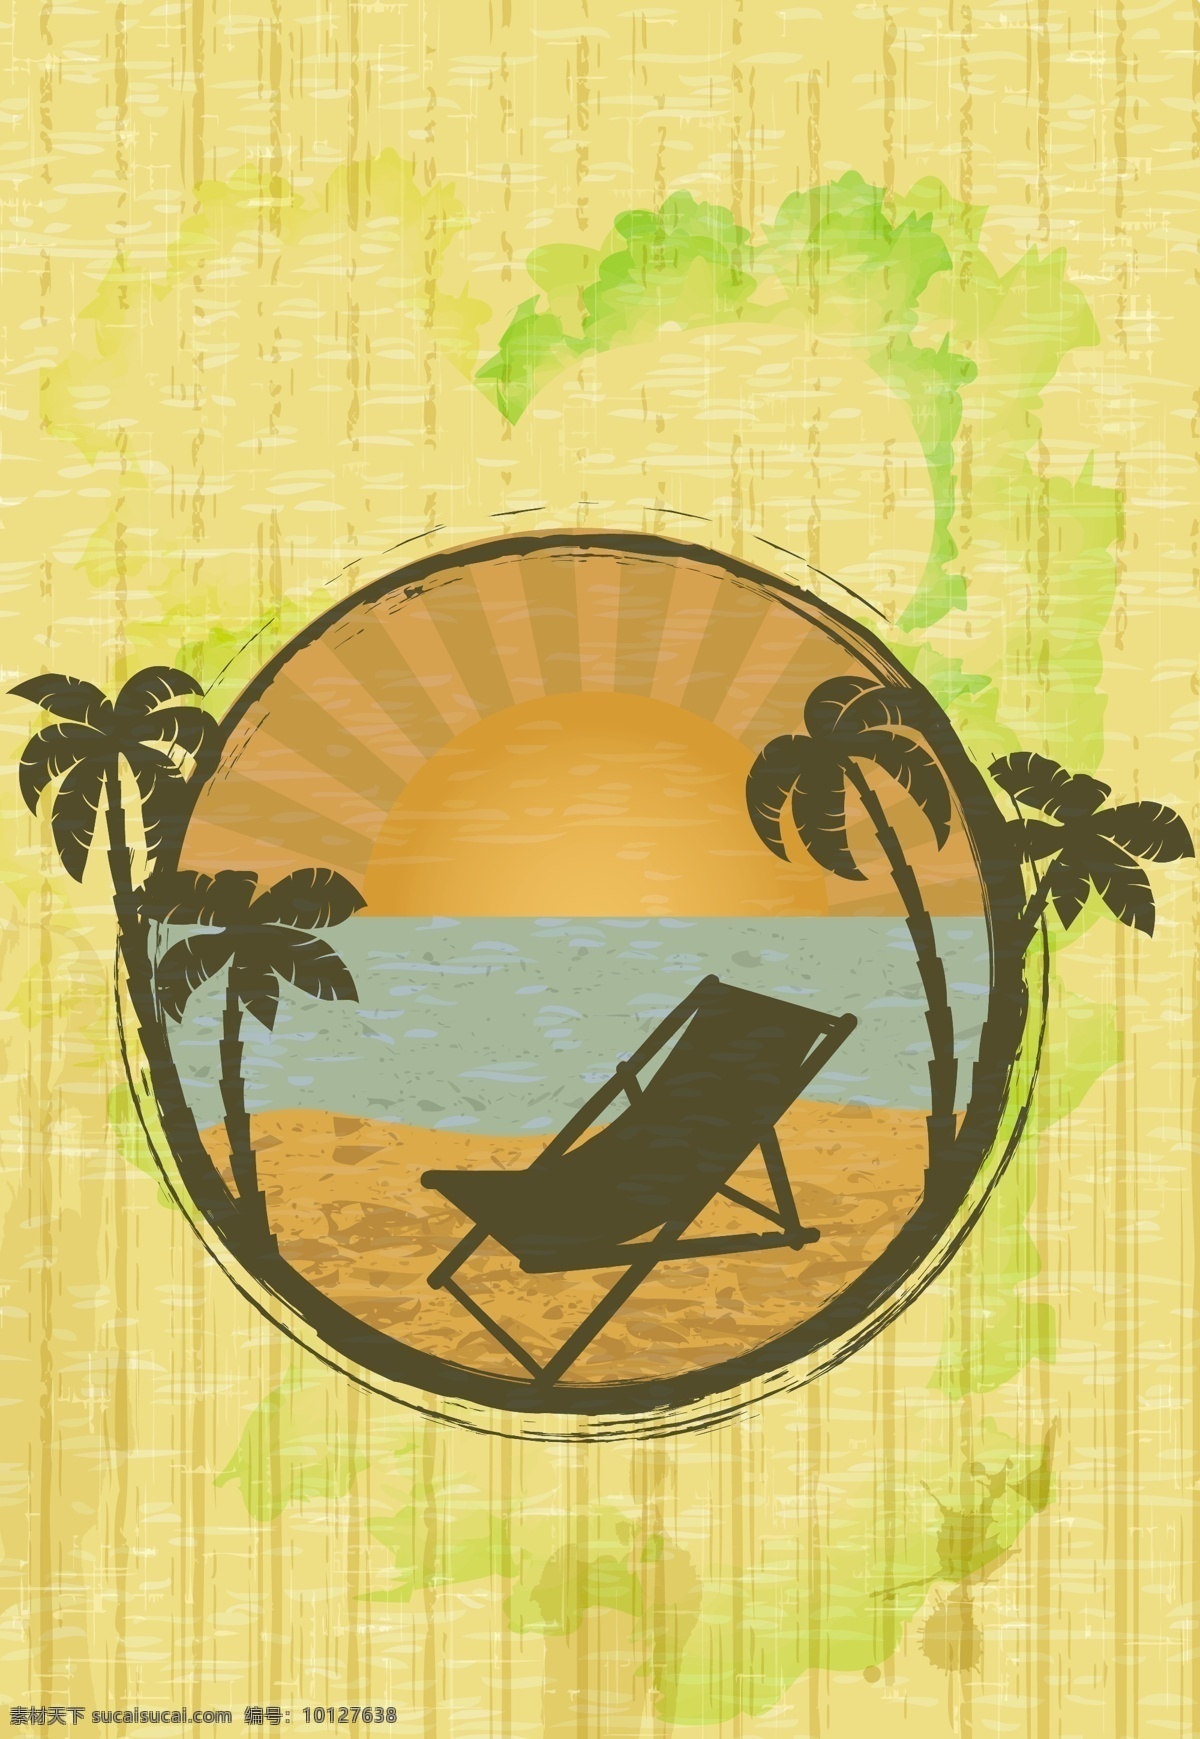 怀旧 夏日 海滩 风景 插画 矢量 模板下载 夏日海滩风景 怀旧背景 椰树 椰树插画 底纹边框 矢量素材 黄色